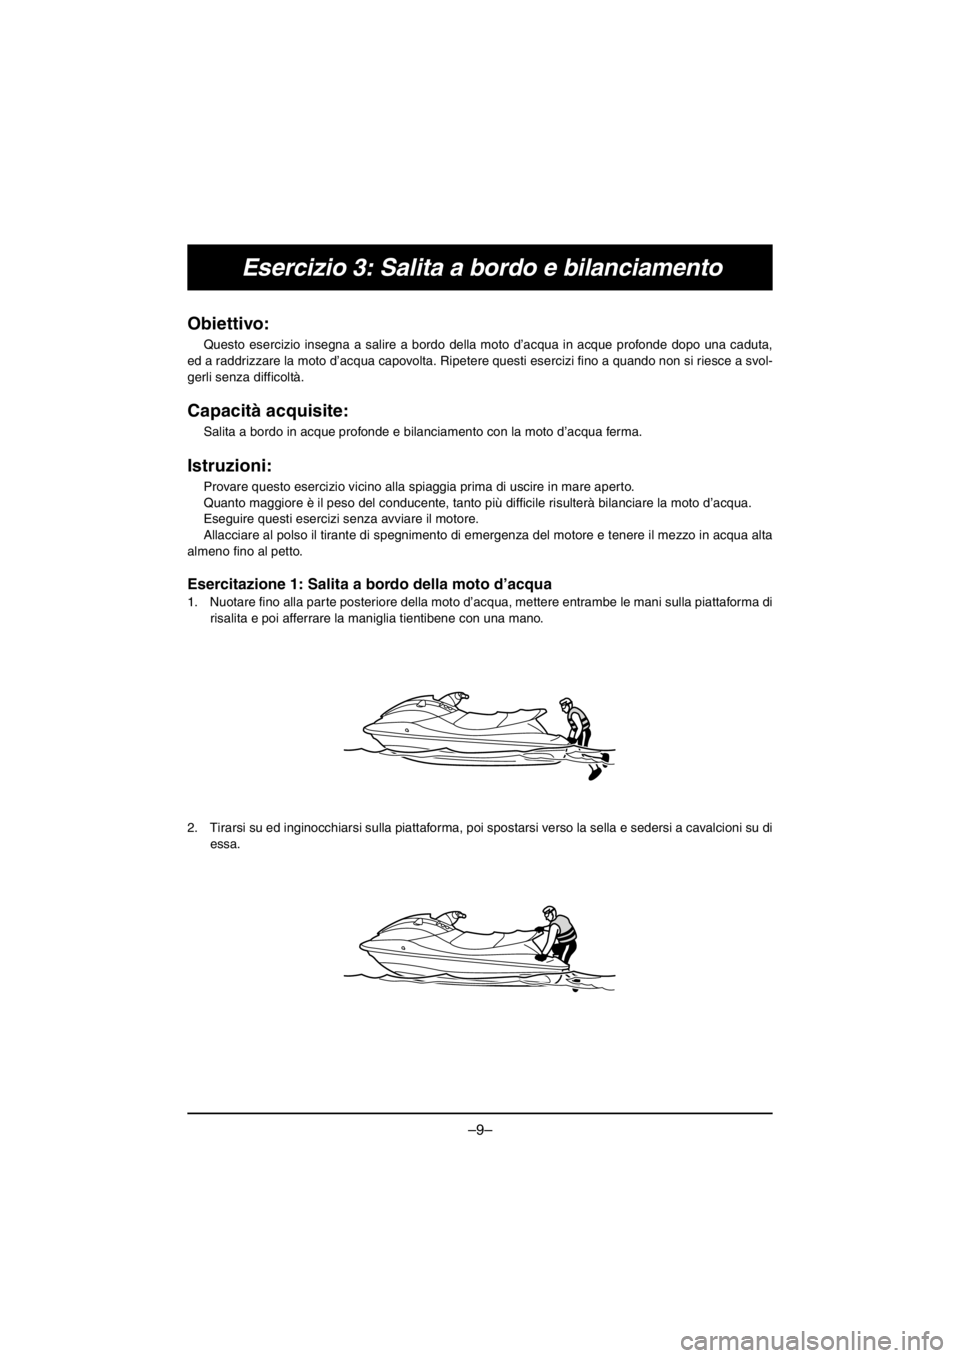 YAMAHA V1 2016  Manuale duso (in Italian) –9–
Esercizio 3: Salita a bordo e bilanciamento
Obiettivo: 
Questo esercizio insegna a salire a bordo della moto d’acqua in acque profonde dopo una caduta,
ed a raddrizzare la moto d’acqua cap